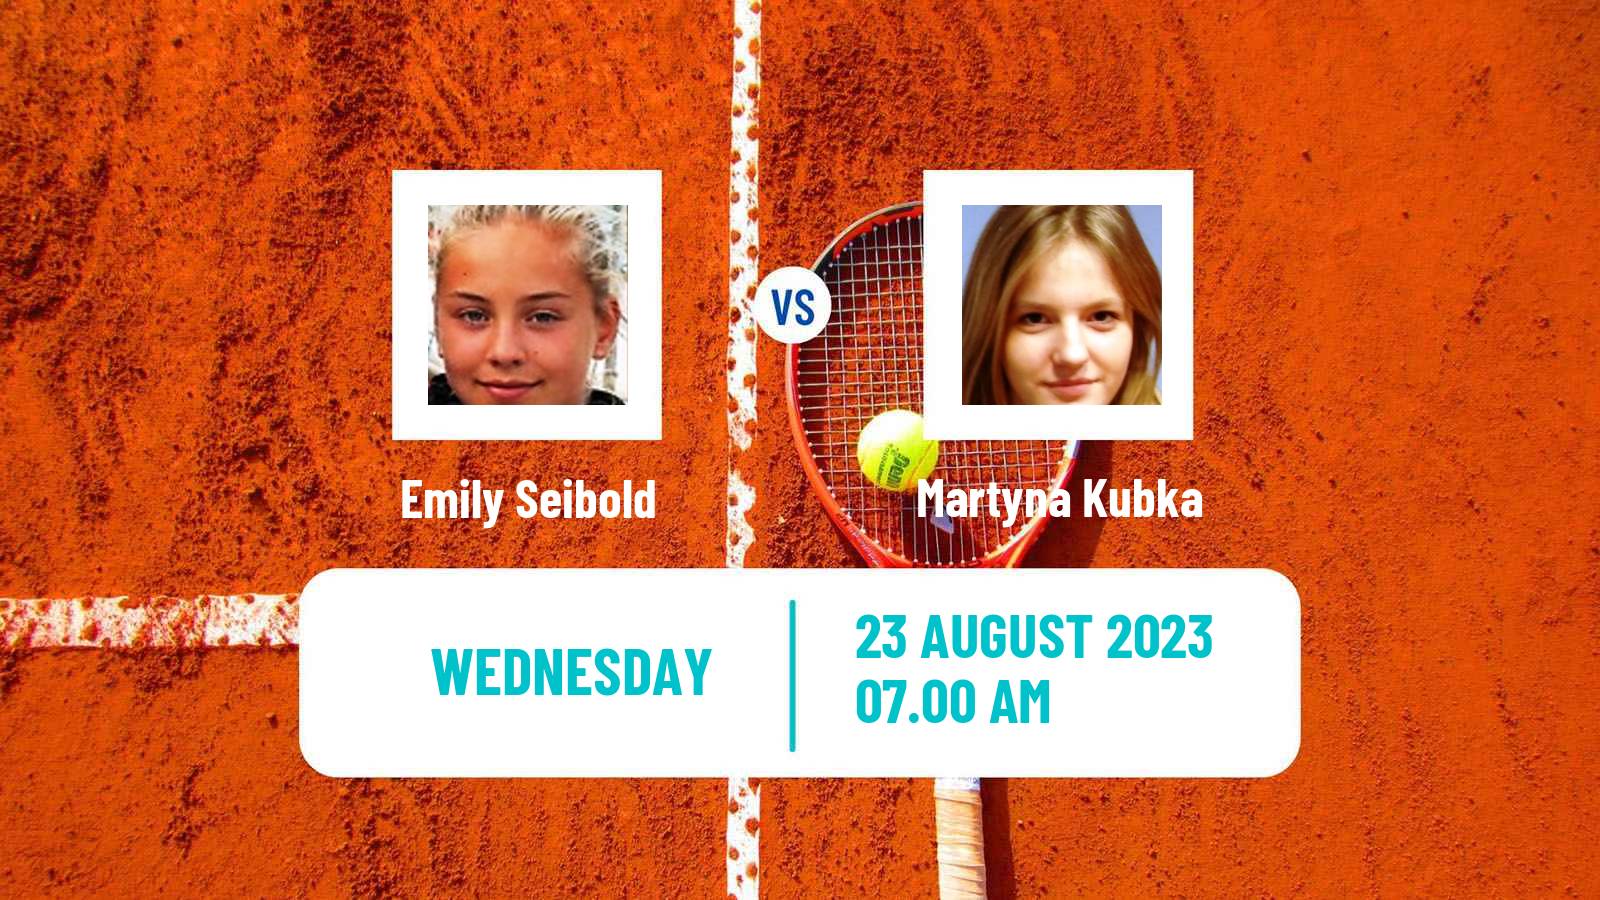 Tennis ITF W25 Bydgoszcz Women Emily Seibold - Martyna Kubka